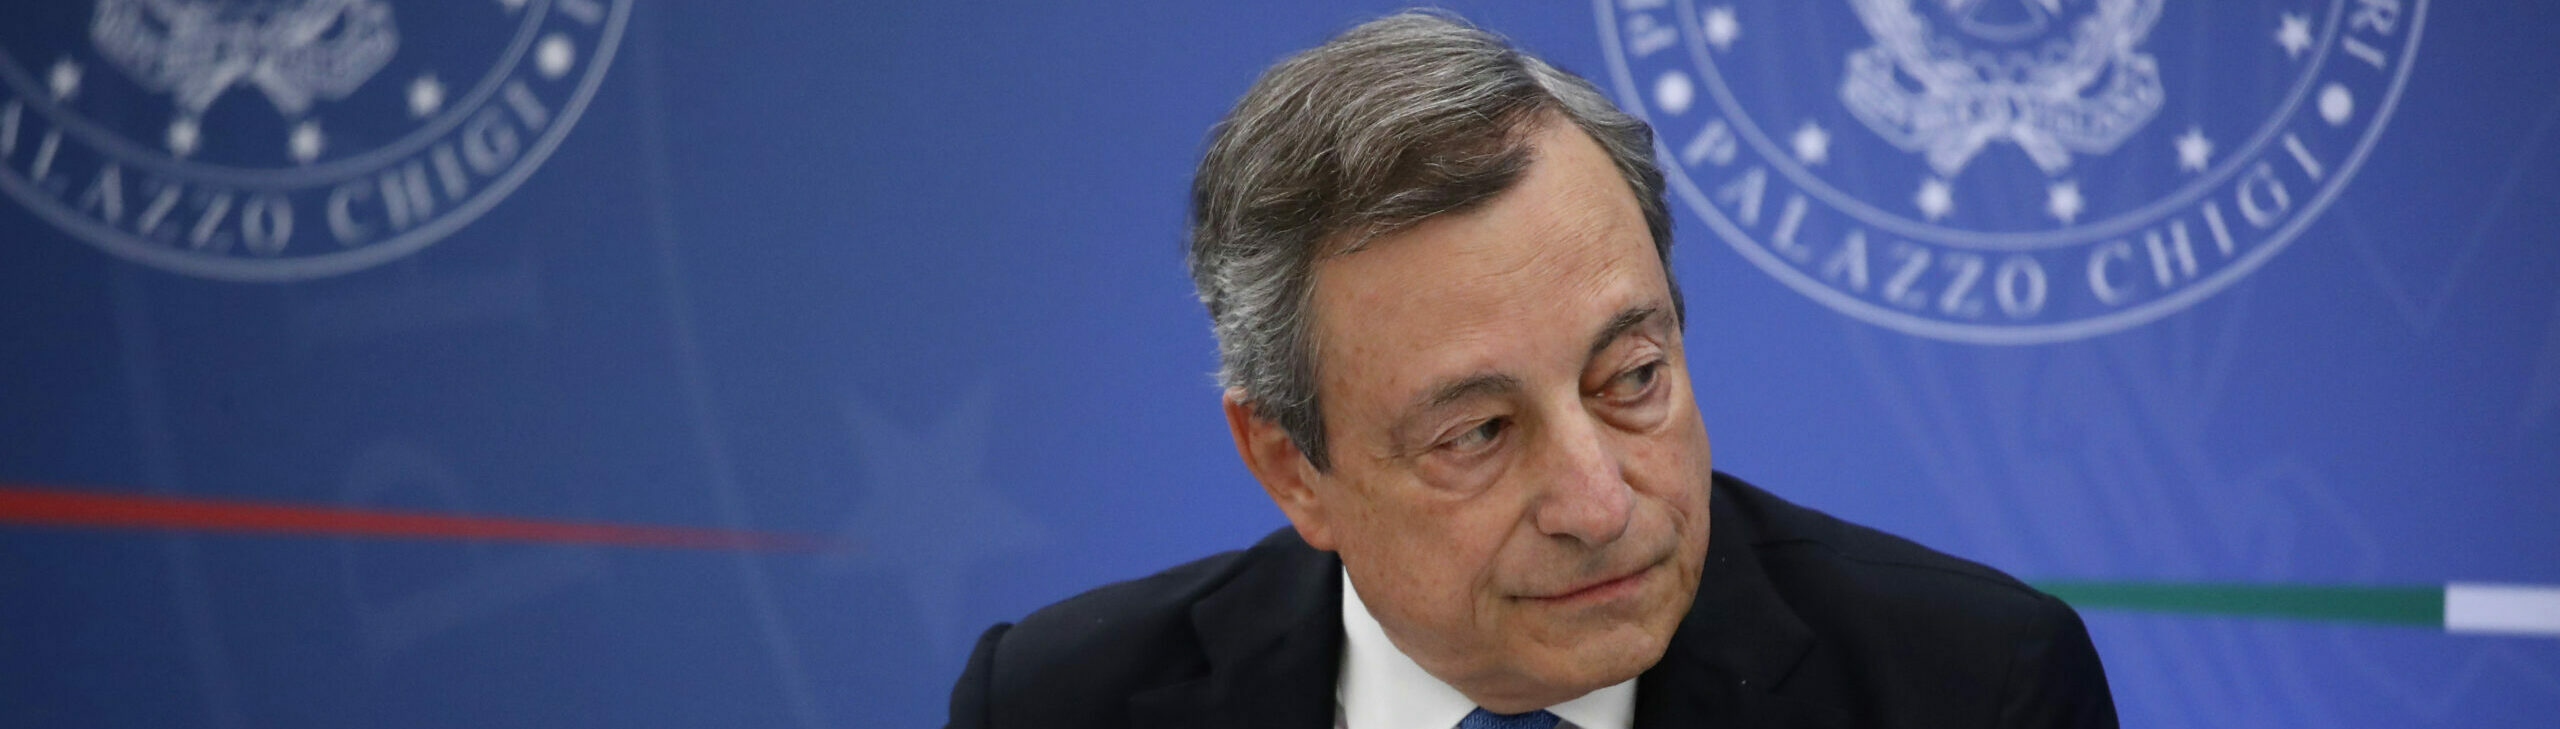 Mario Draghi, primer Ministro de Italia